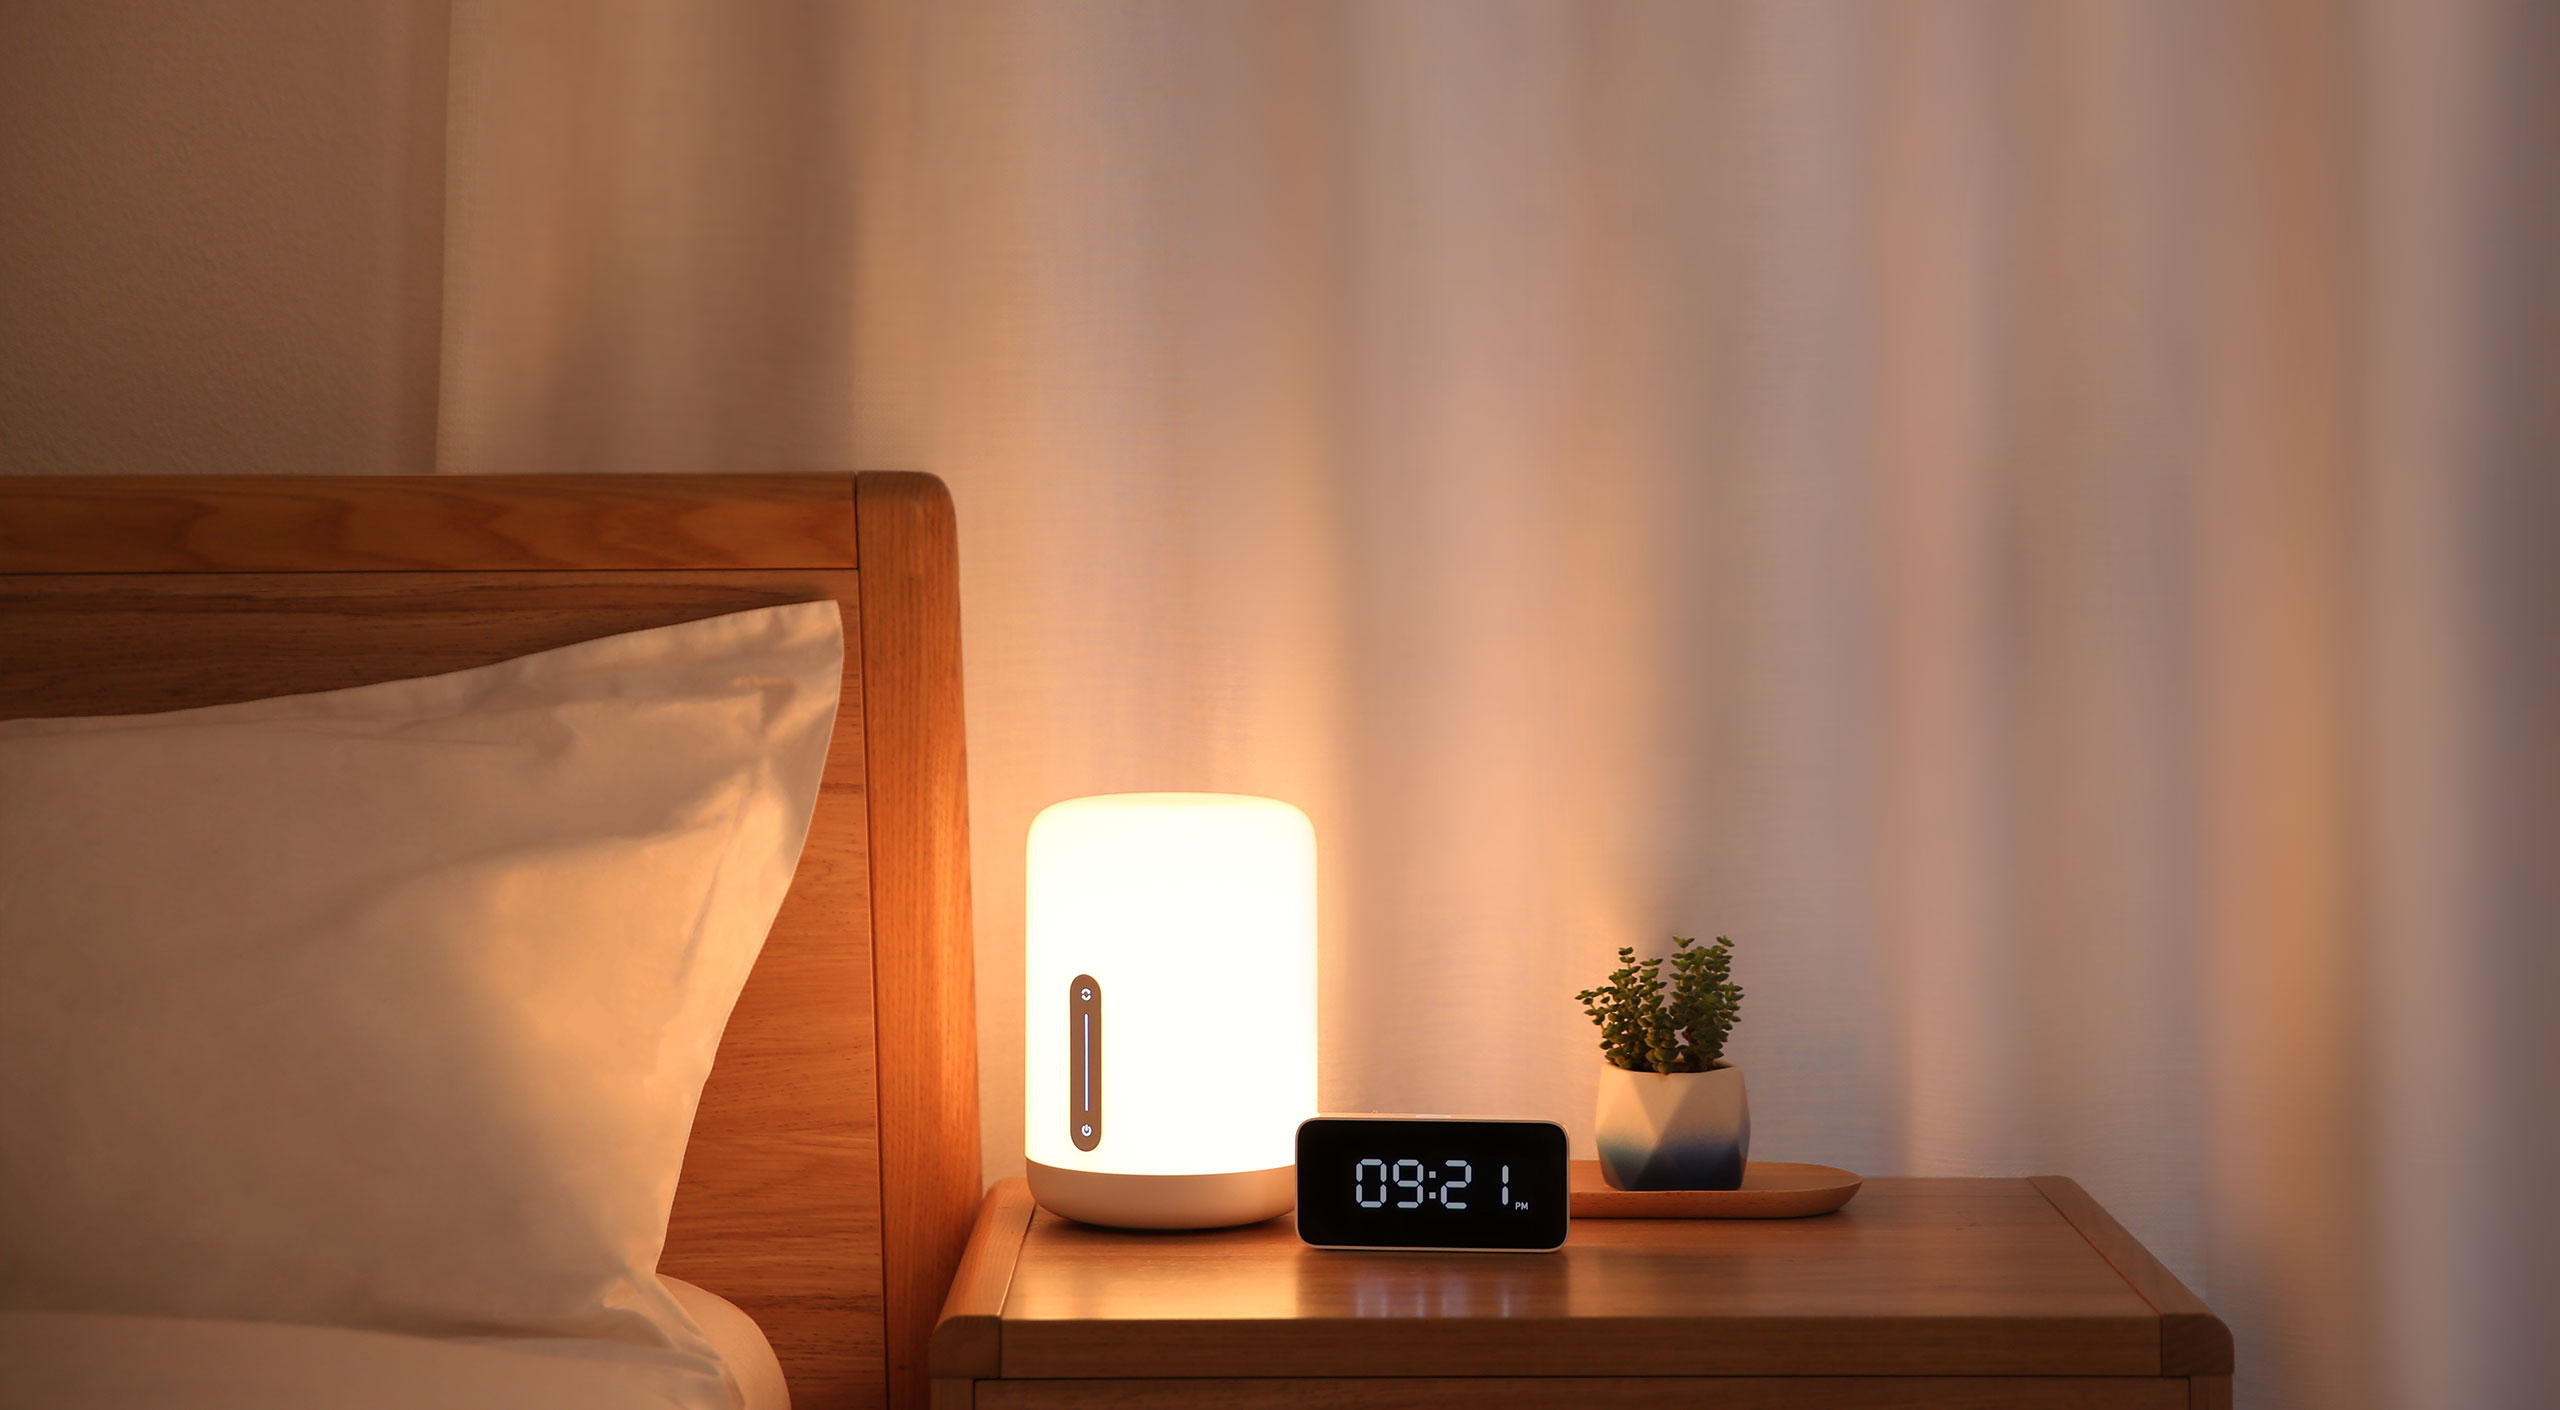 Xiaomi menekankan pada otomatisasi rumah dan menetapkan tris: inilah penyedot debu baru, pembersih udara, dan lampu baru 4